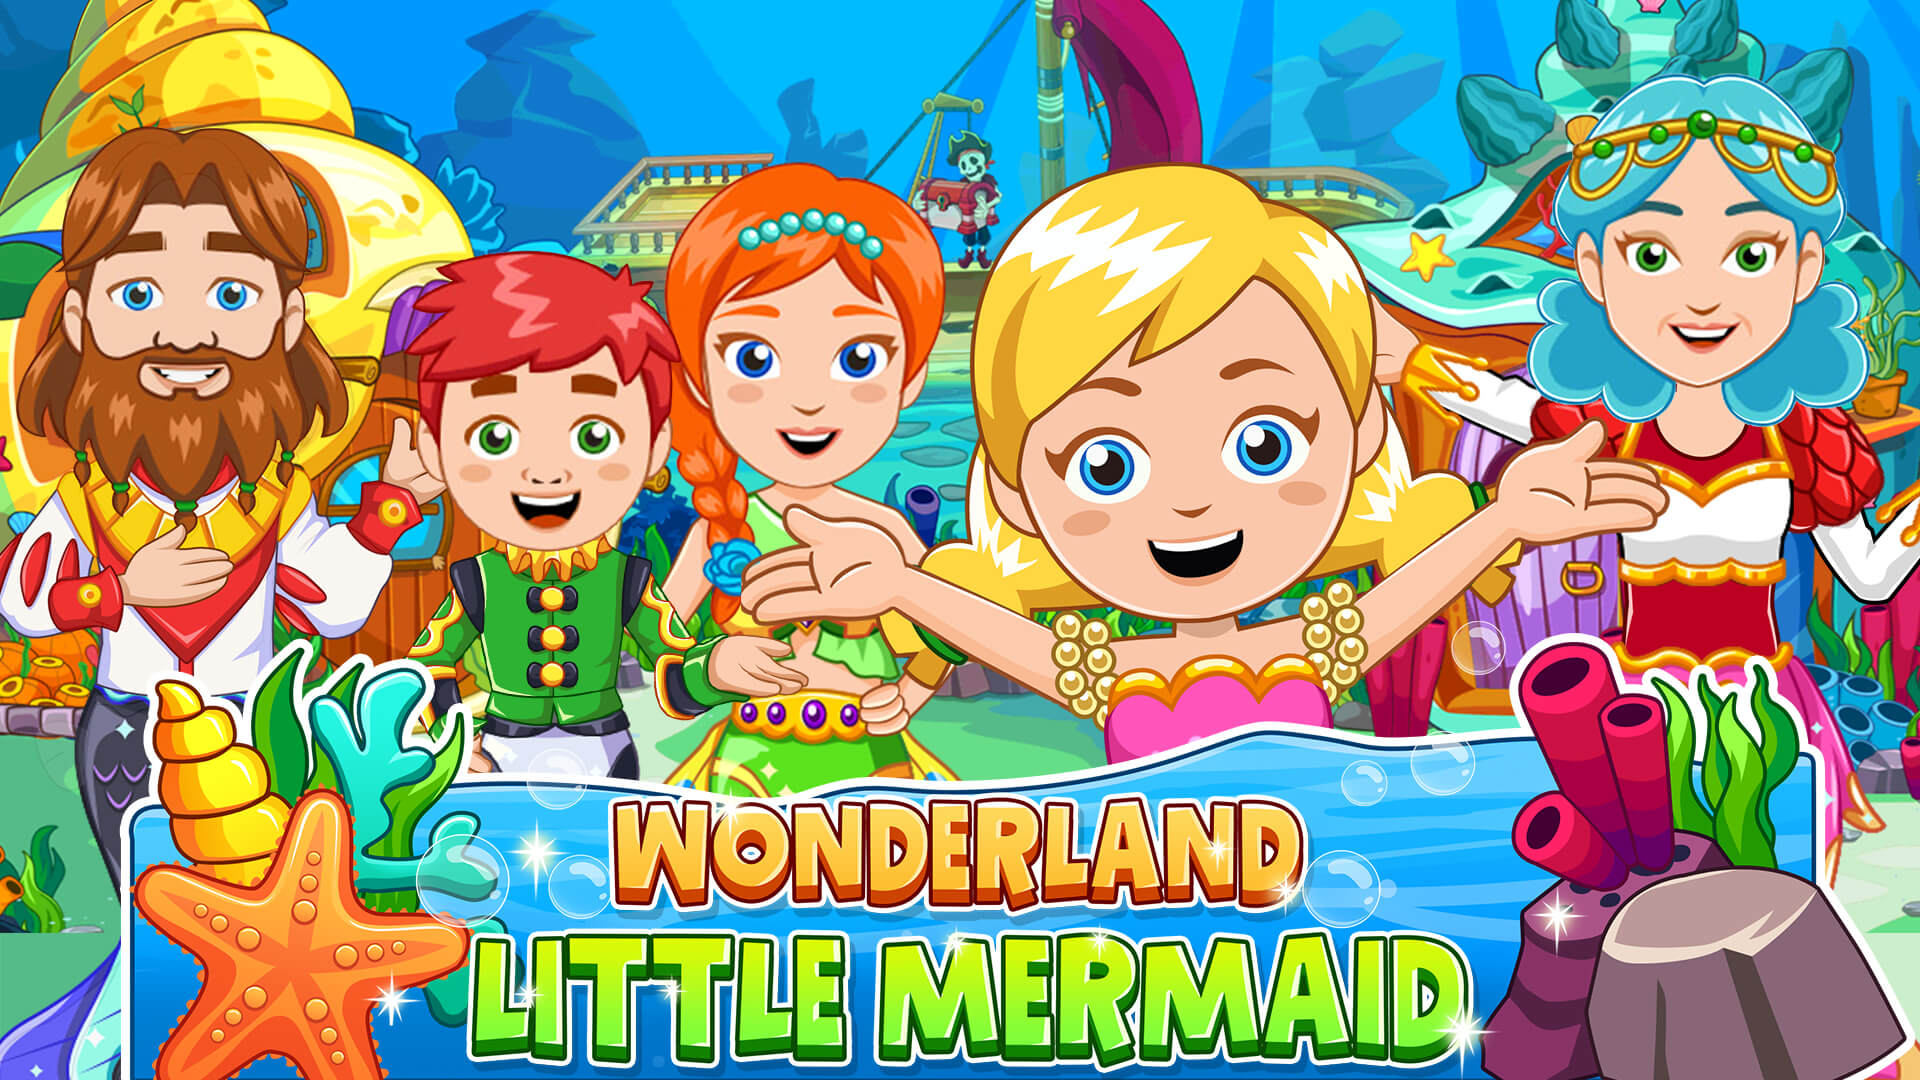 Little Mermaid - My Town Games